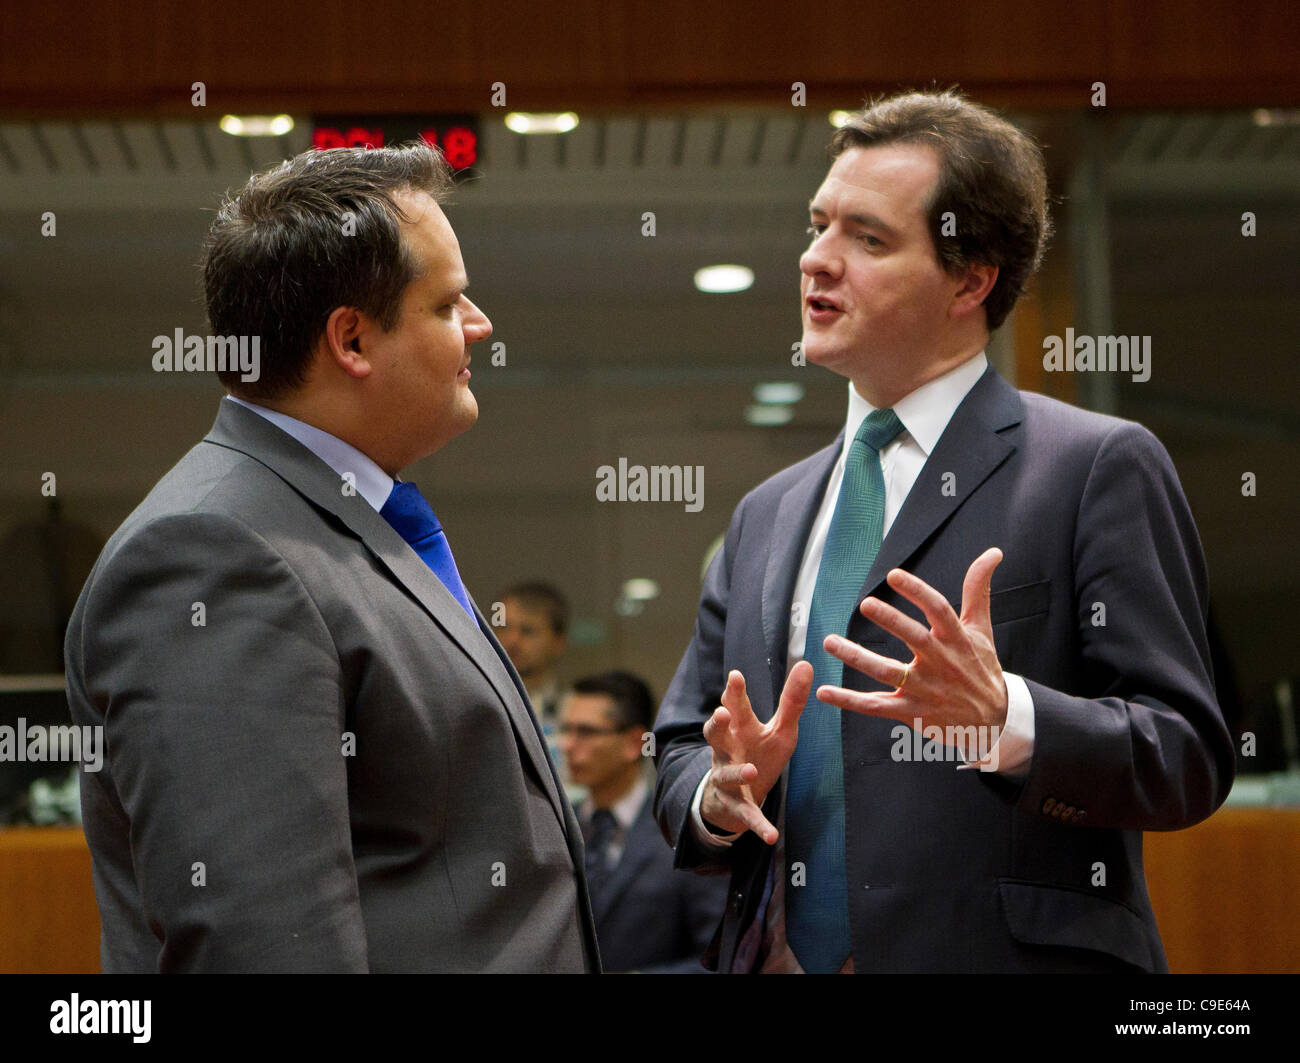 Fotografiado en el Ecofin reunión de los ministros europeos de finanzas son, de izquierda a derecha, Jan Kees de Jager, Ministro de Hacienda de los Países Bajos con el Ministro de Hacienda británico, George Osborne. Foto de stock